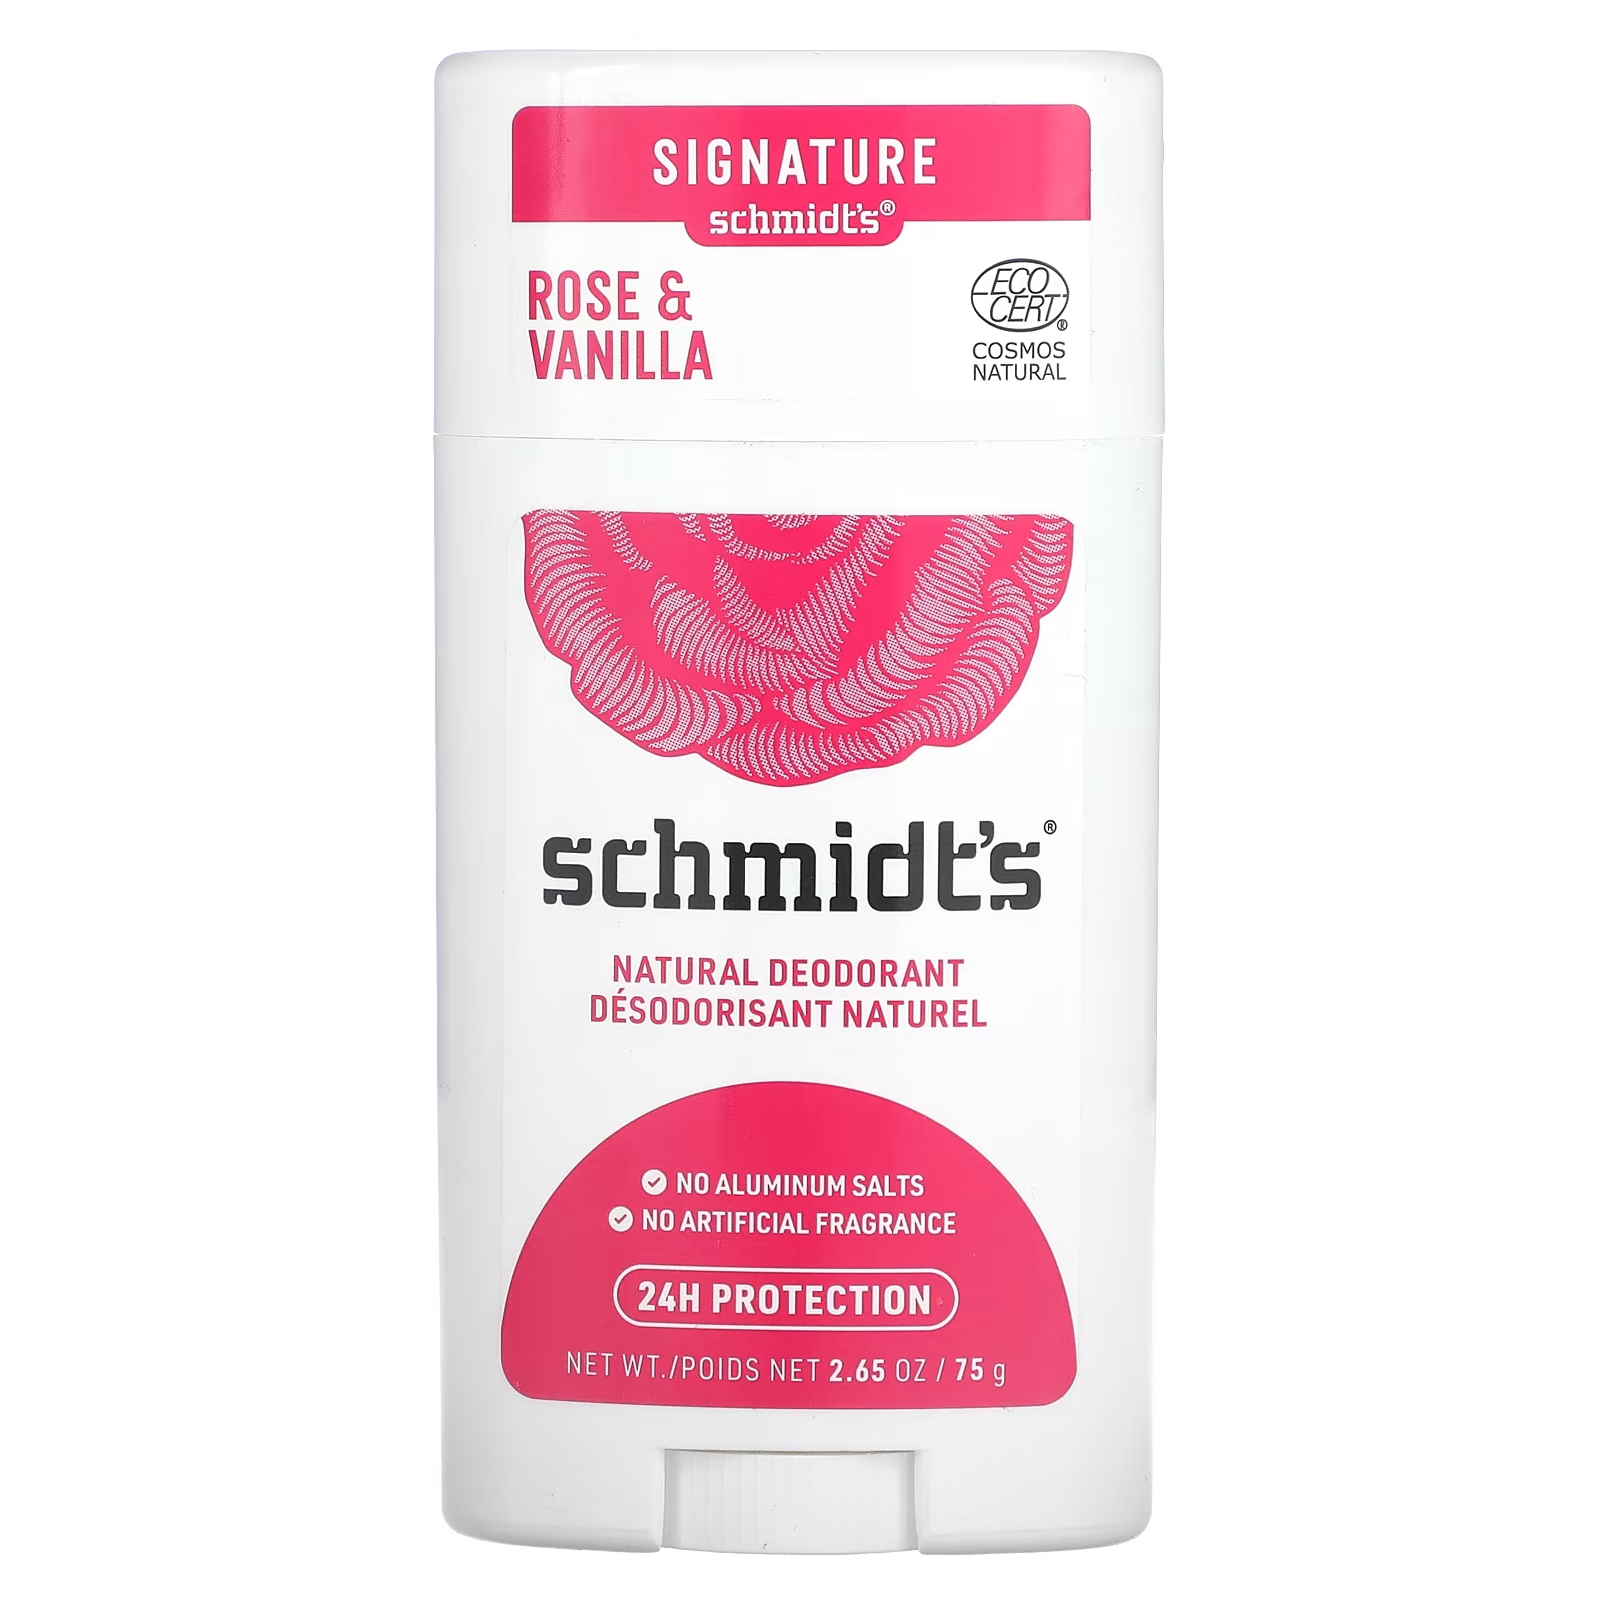 Натуральный дезодорант Schmidt's «Роза и ваниль», 2,65 унции (75 г) schmidt s натуральный дезодорант роза и ваниль 75 г 2 65 унции